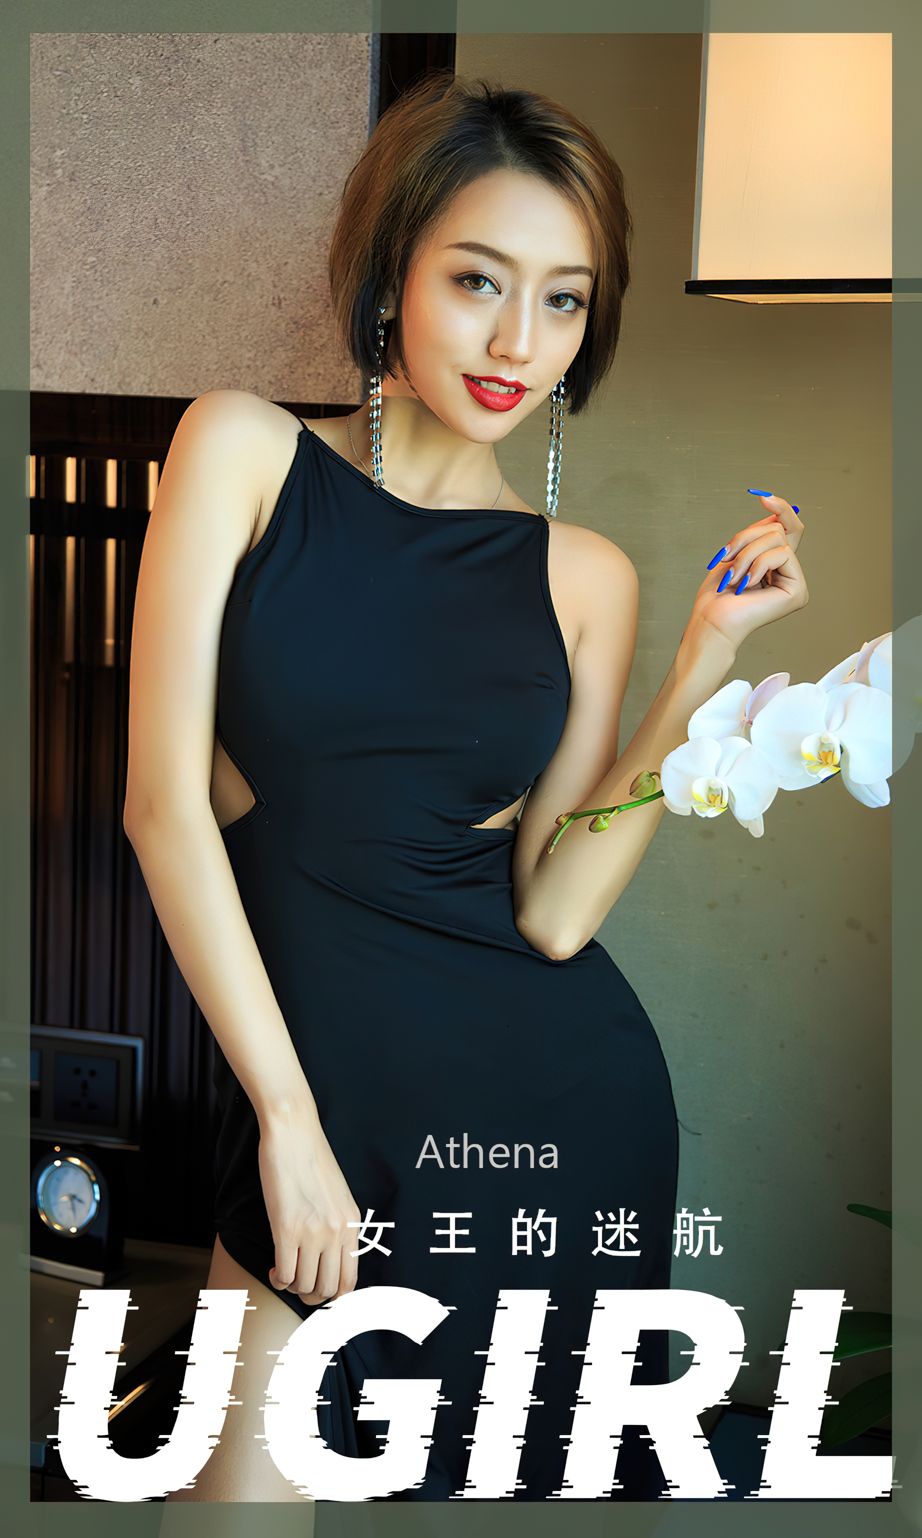 美女模特马欣悦Athena多套服饰女王迷航主题性感写真